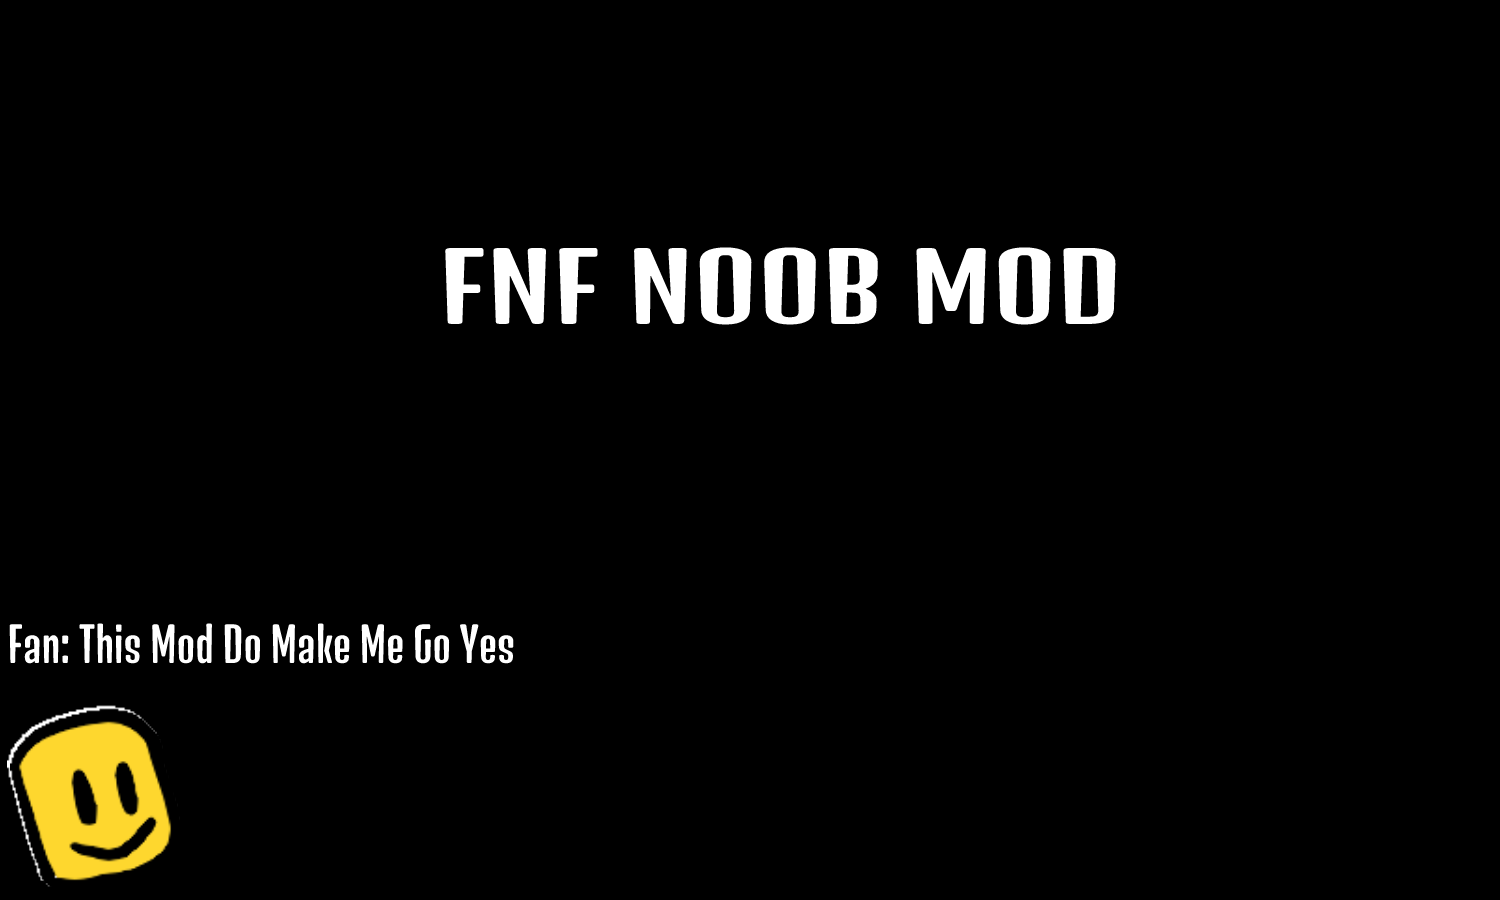 FRIDAY NIGHT FUNKIN' NOOB jogo online gratuito em